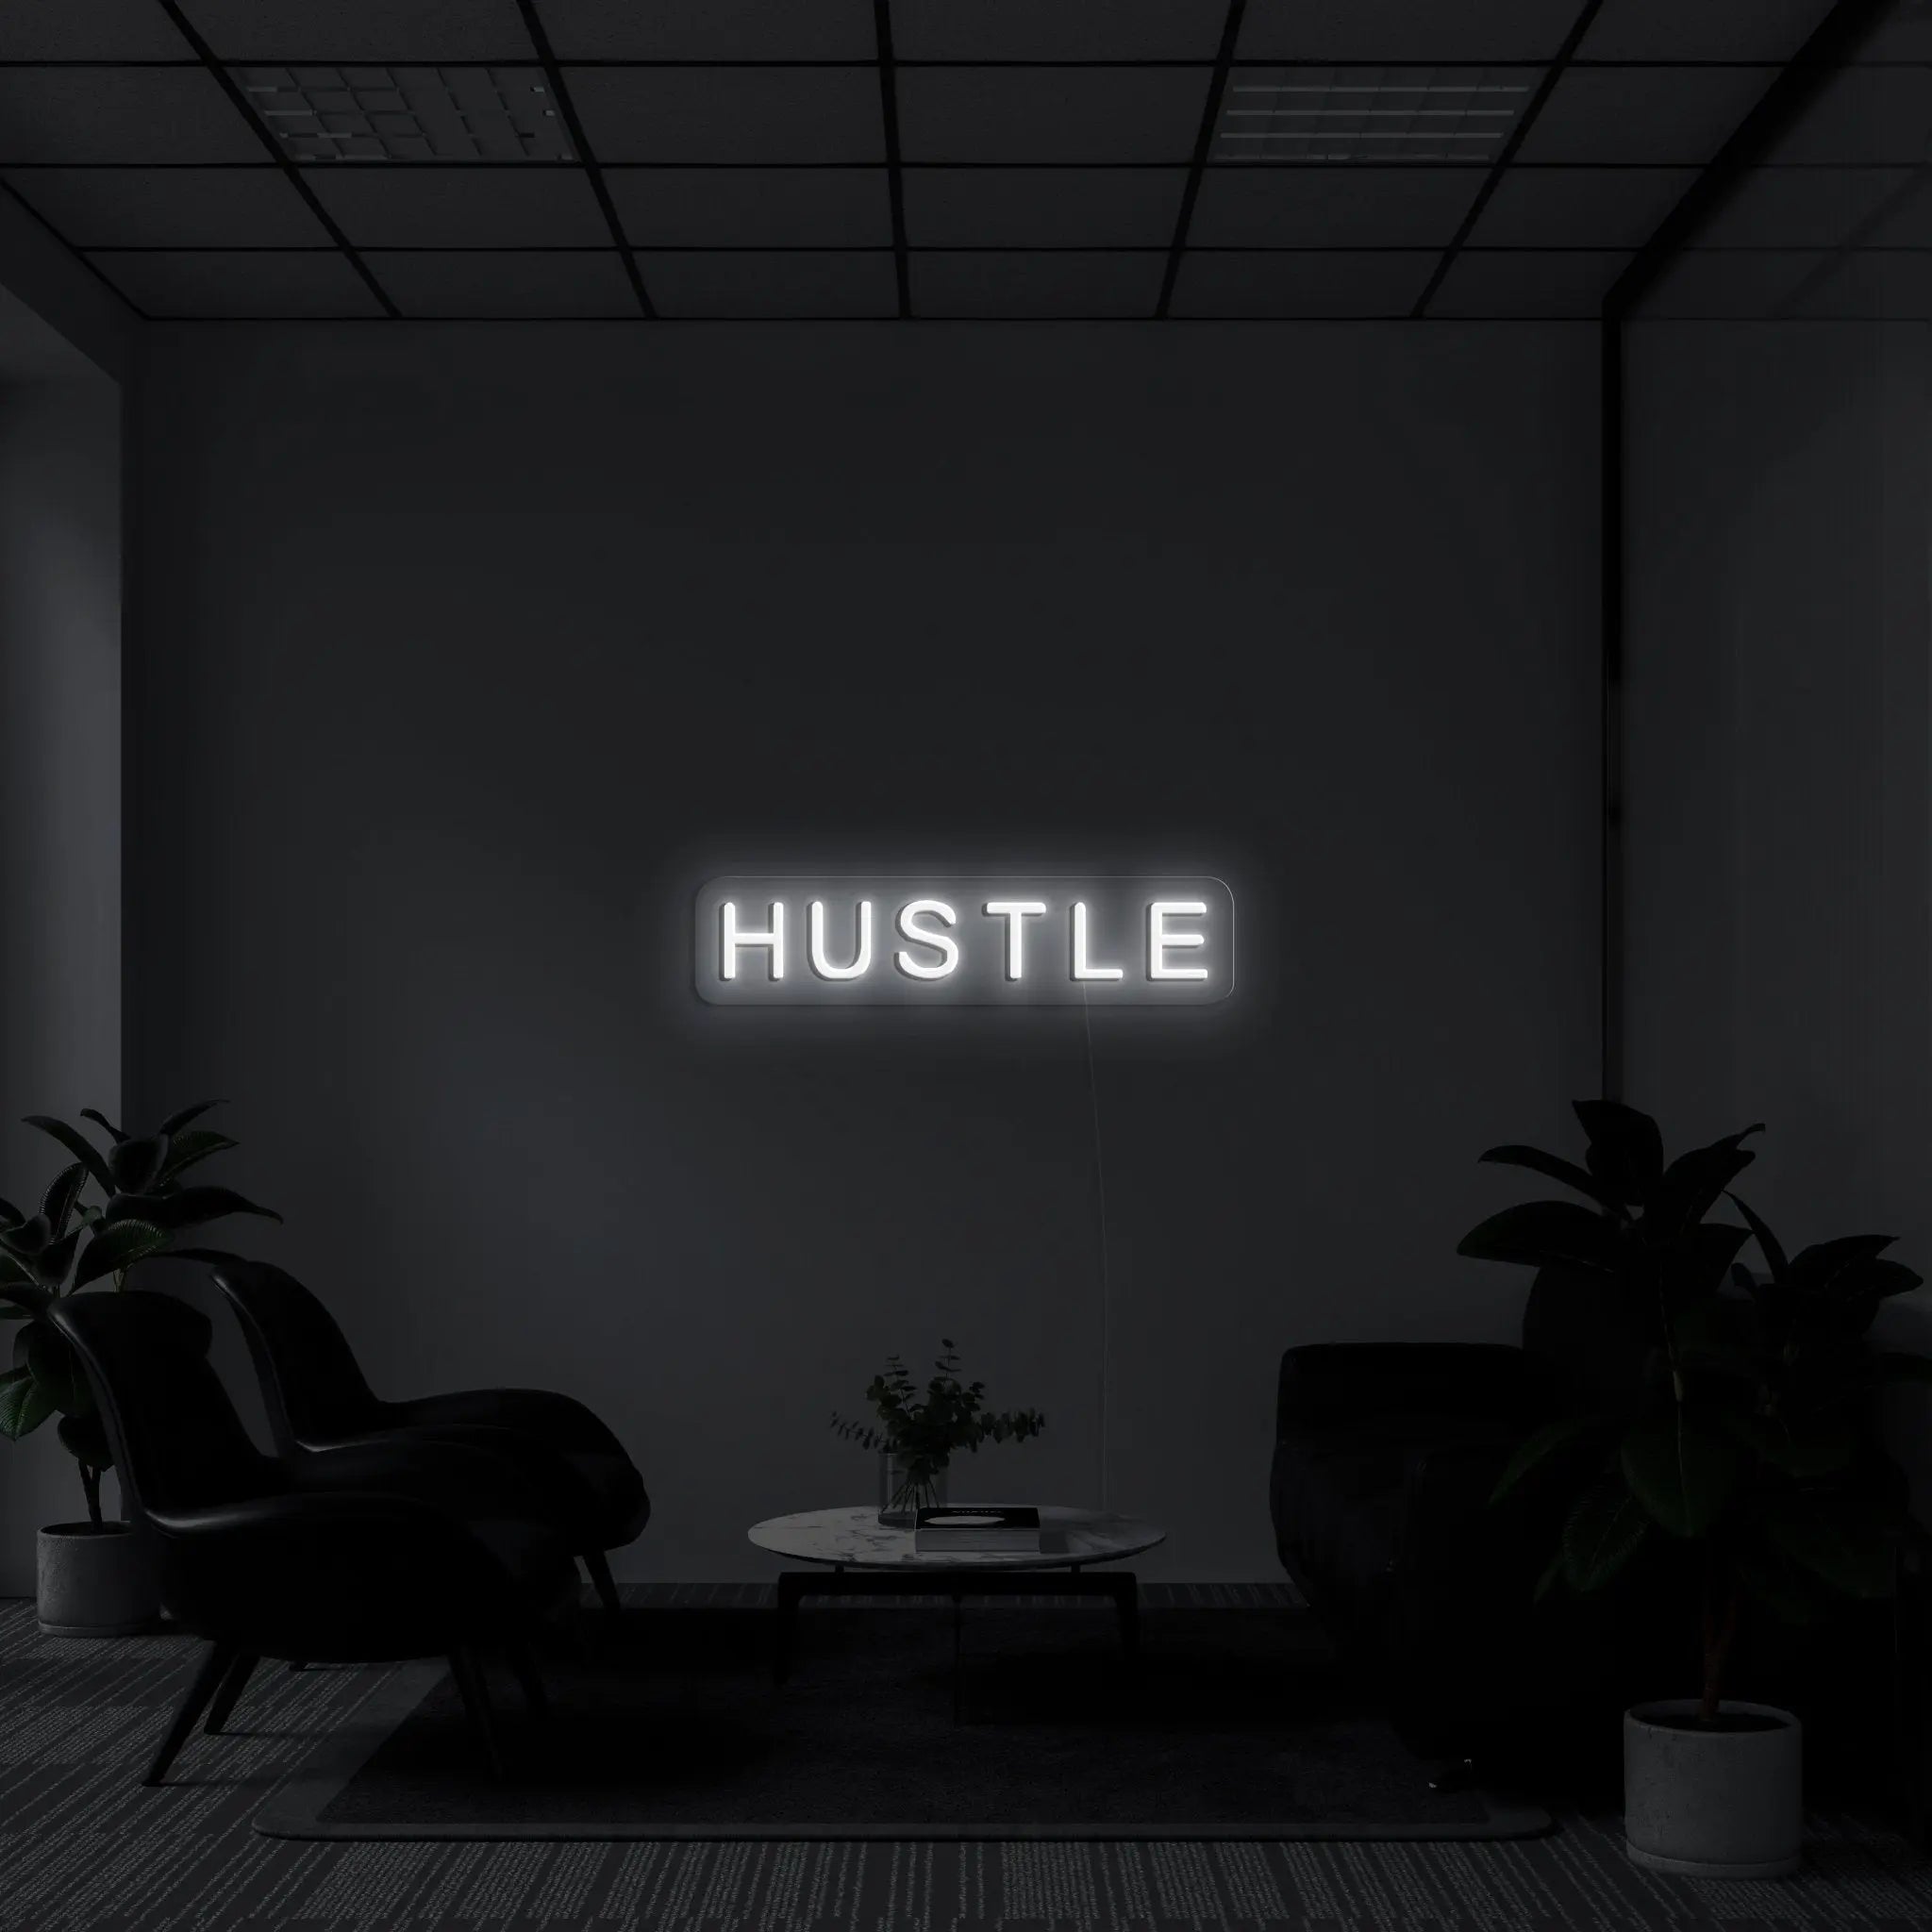 "Hustle" LED Neon Sign - neonaffair